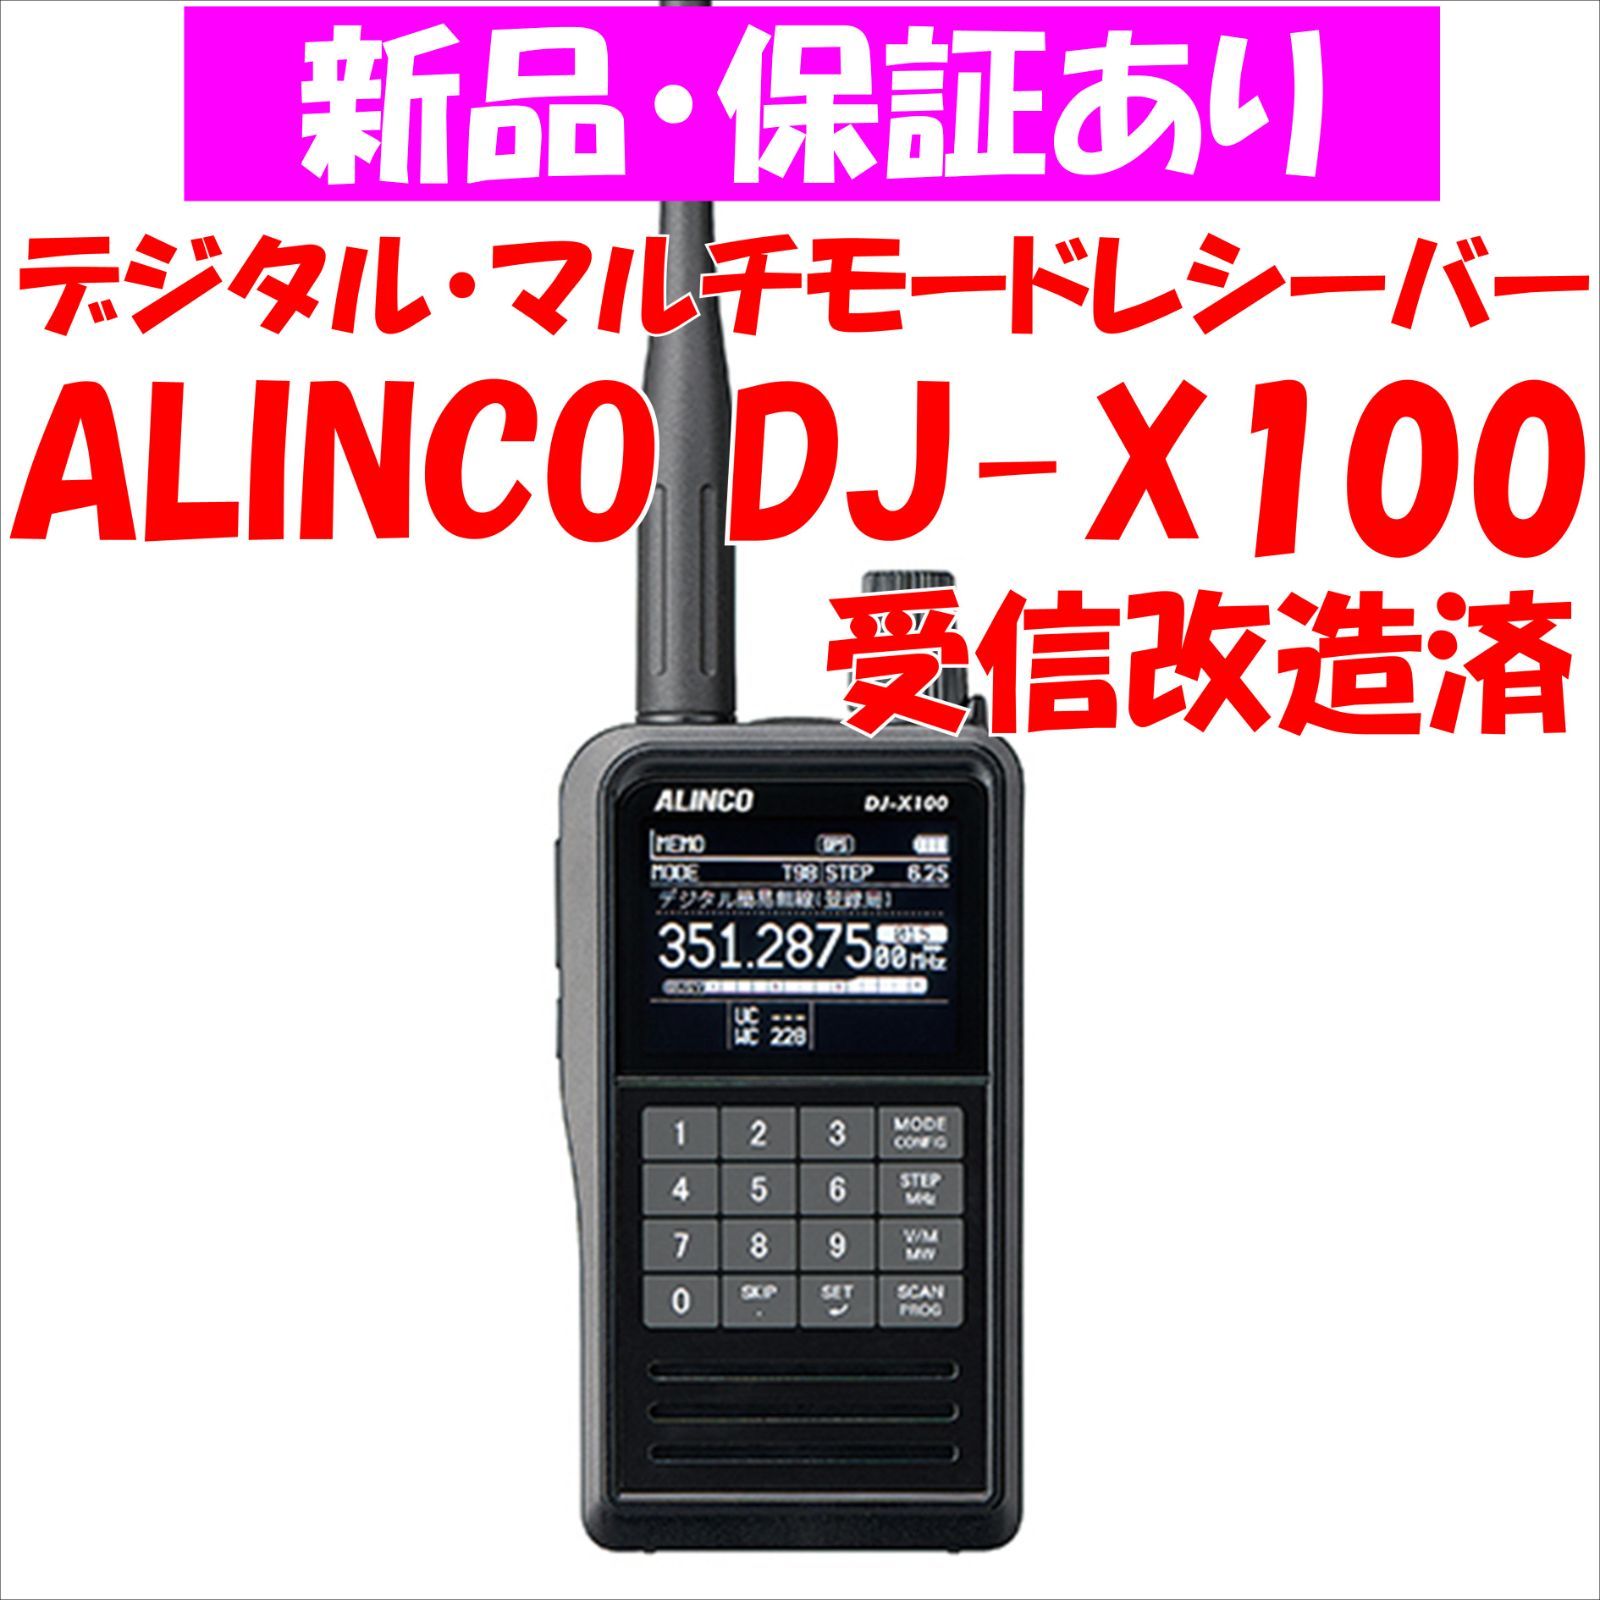 DJ-X100 受信改造版 - その他